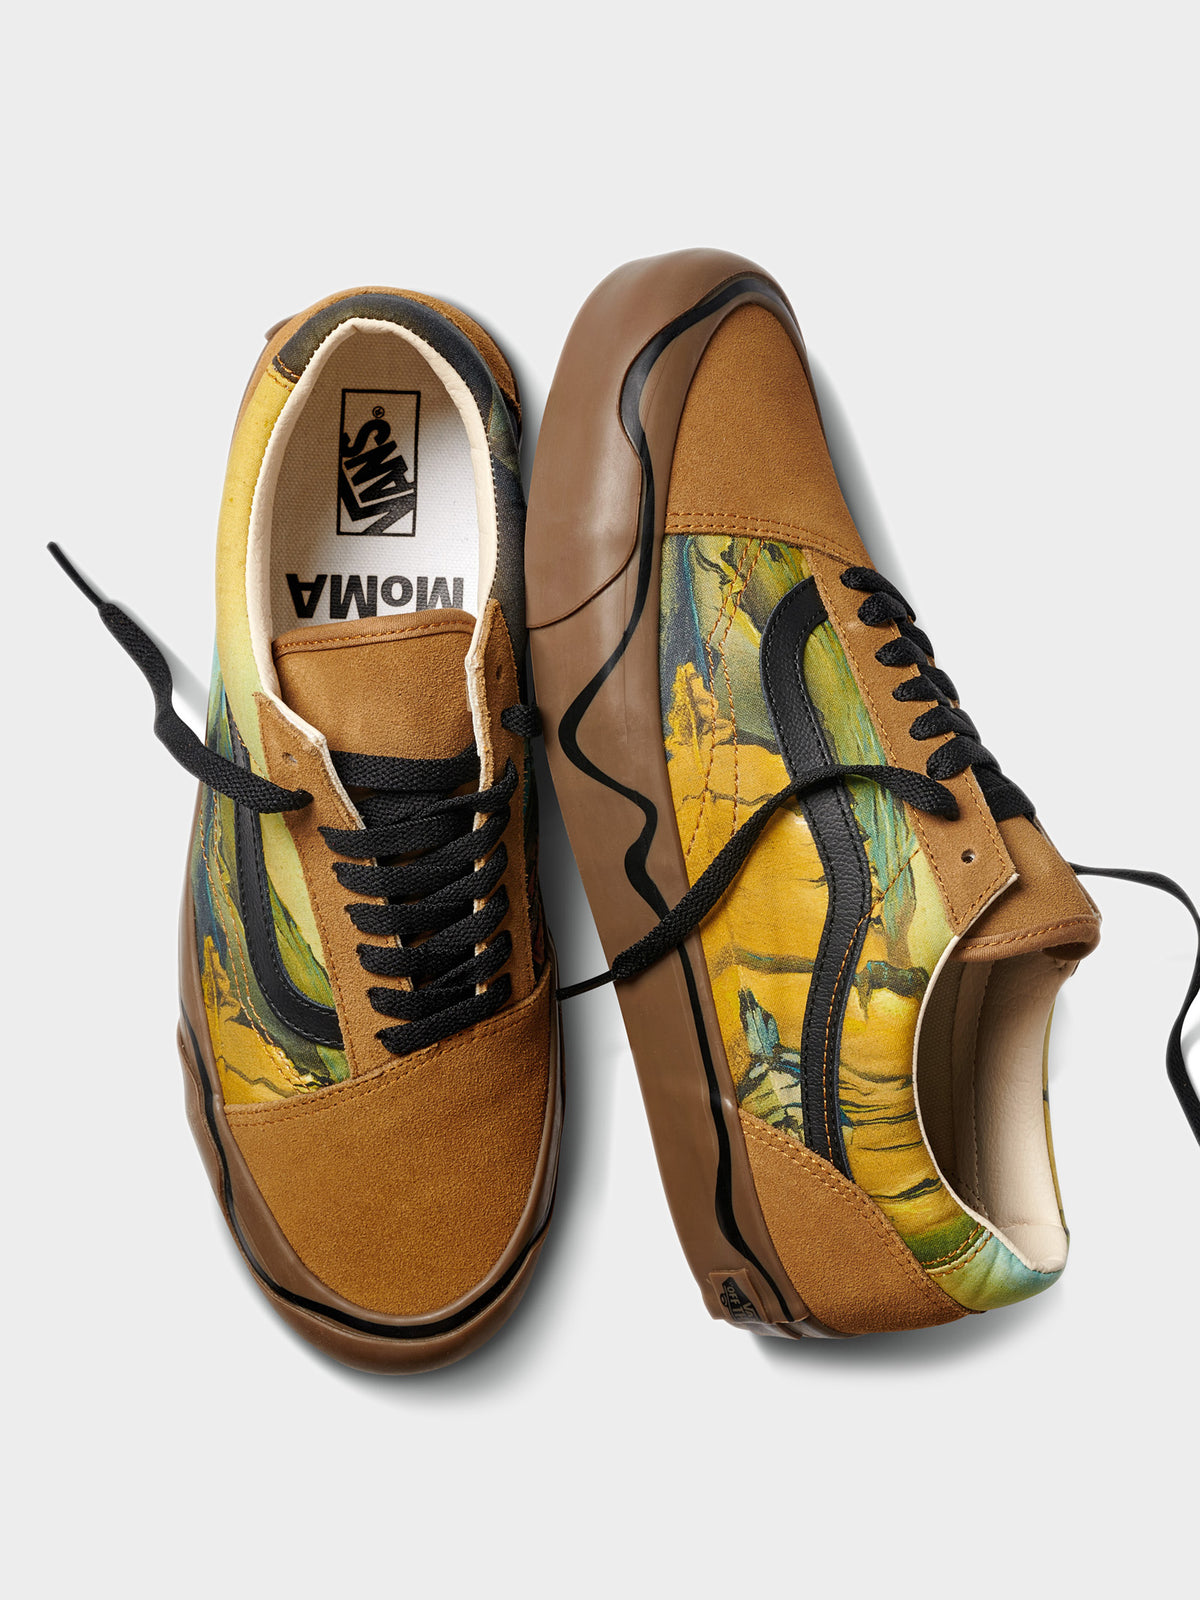 Unisex Old Skool Twist MoMA Sneakers in Salvador Dali Print